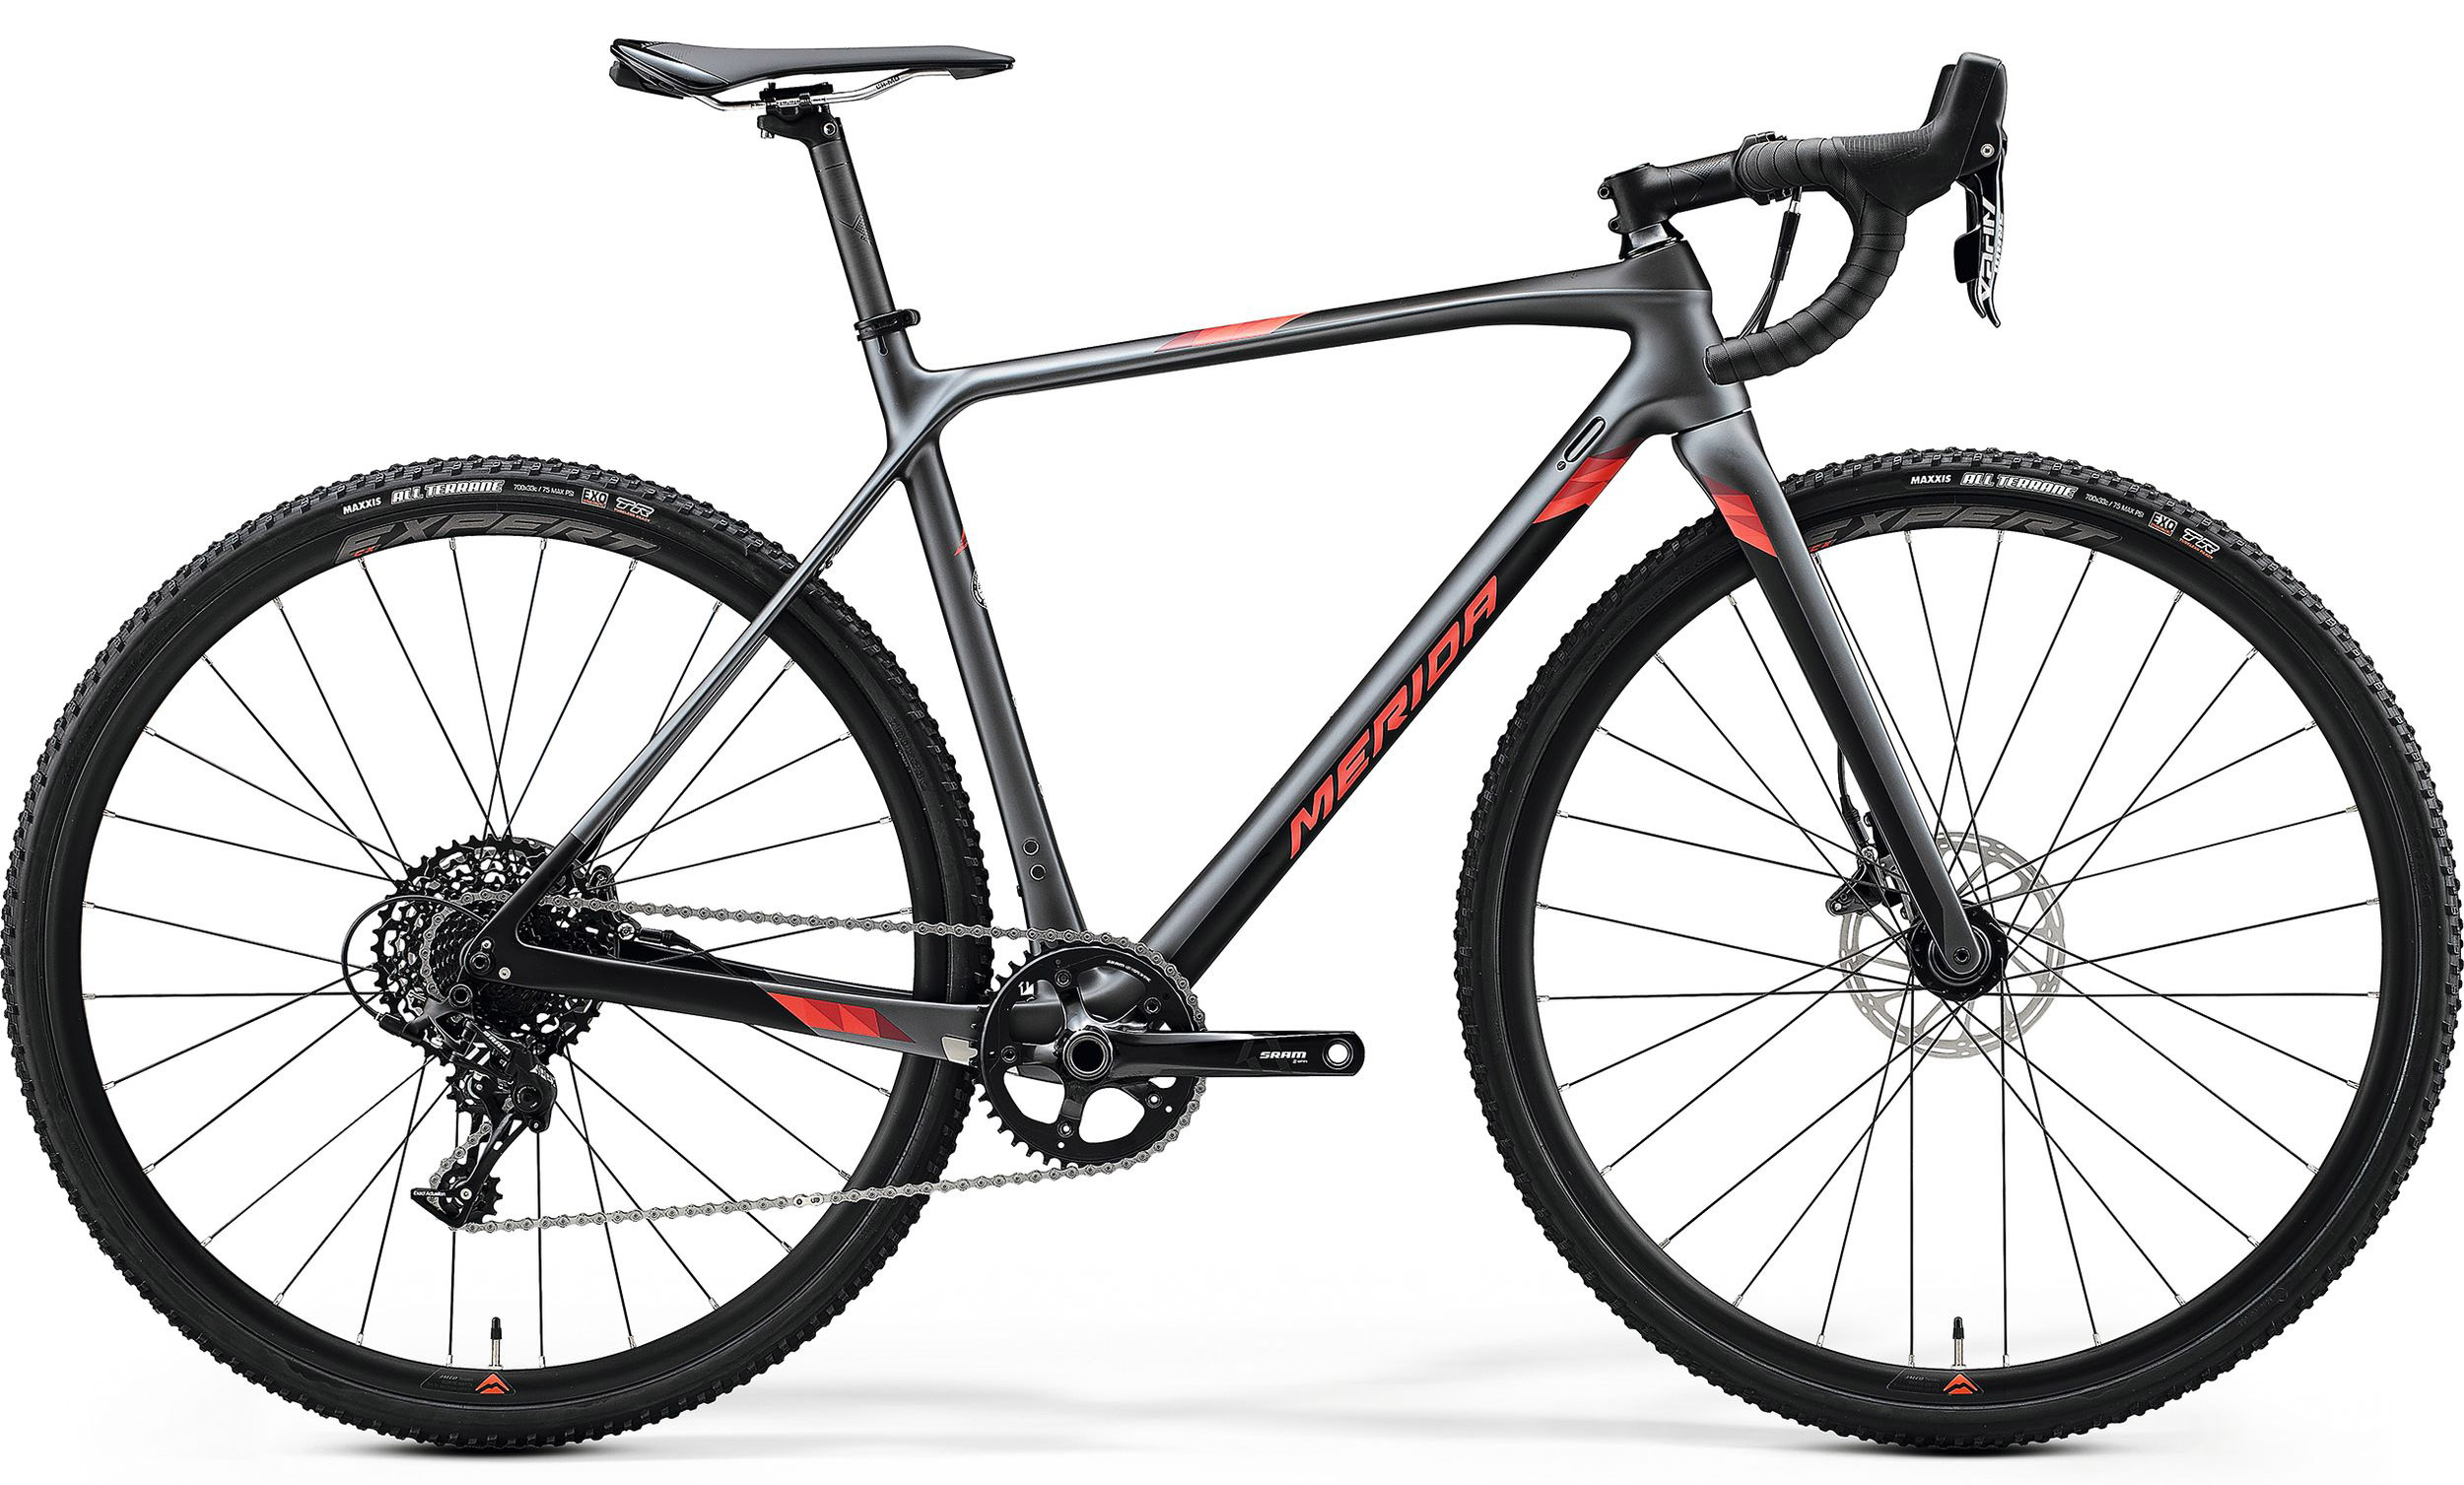  Отзывы о Шоссейном велосипеде Merida Mission CX5000 2020